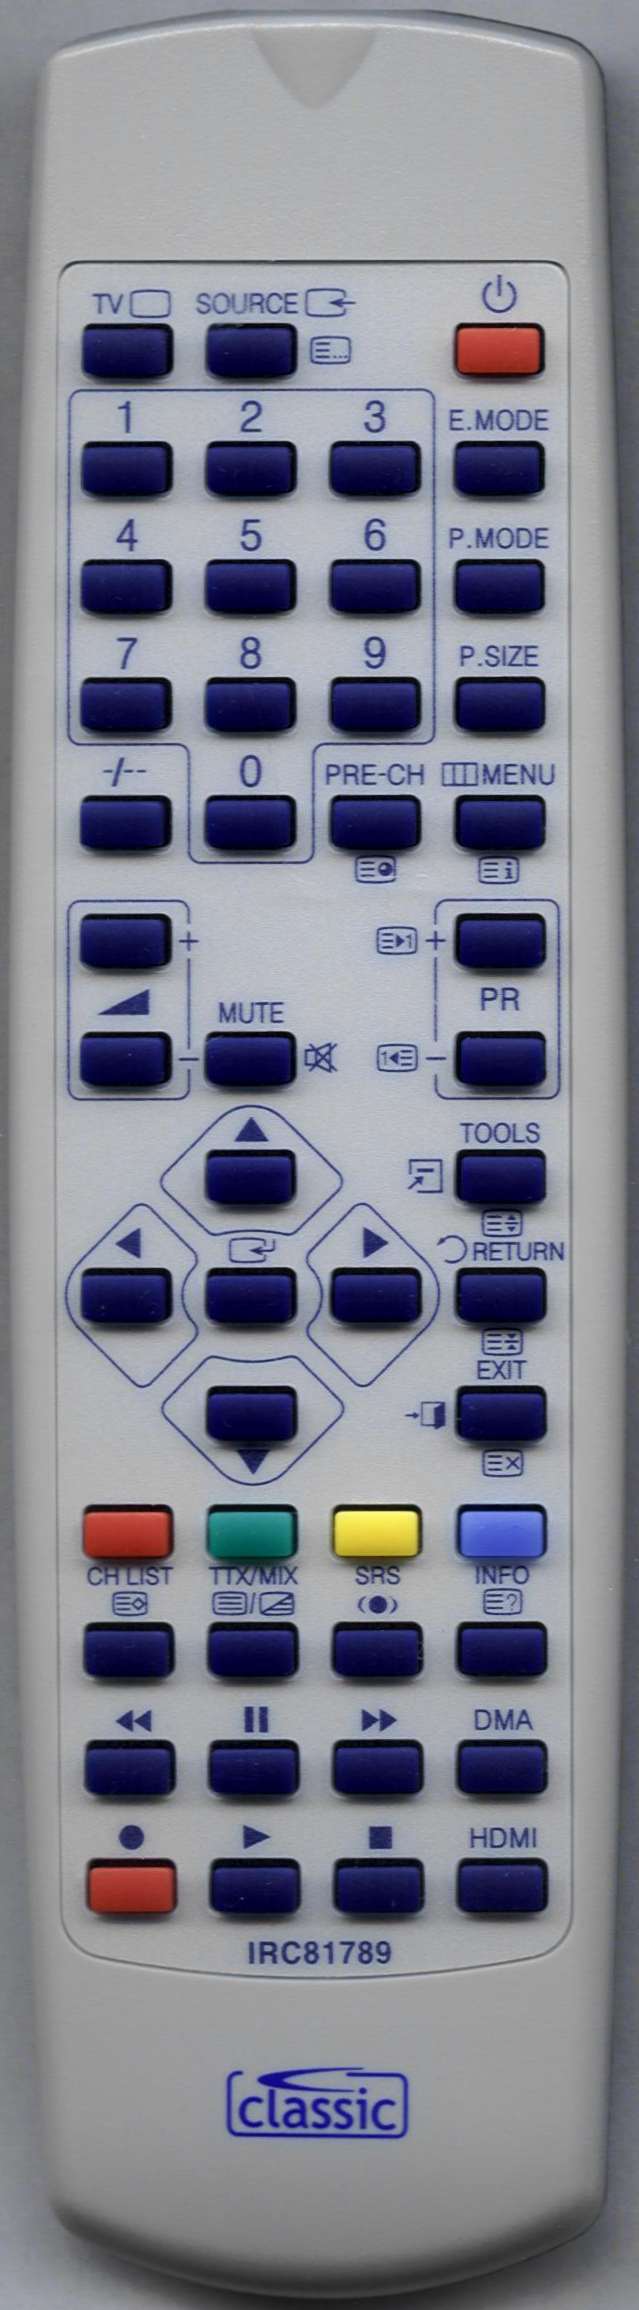 SAMSUNG LA32A450C1 Remote Control Alternative